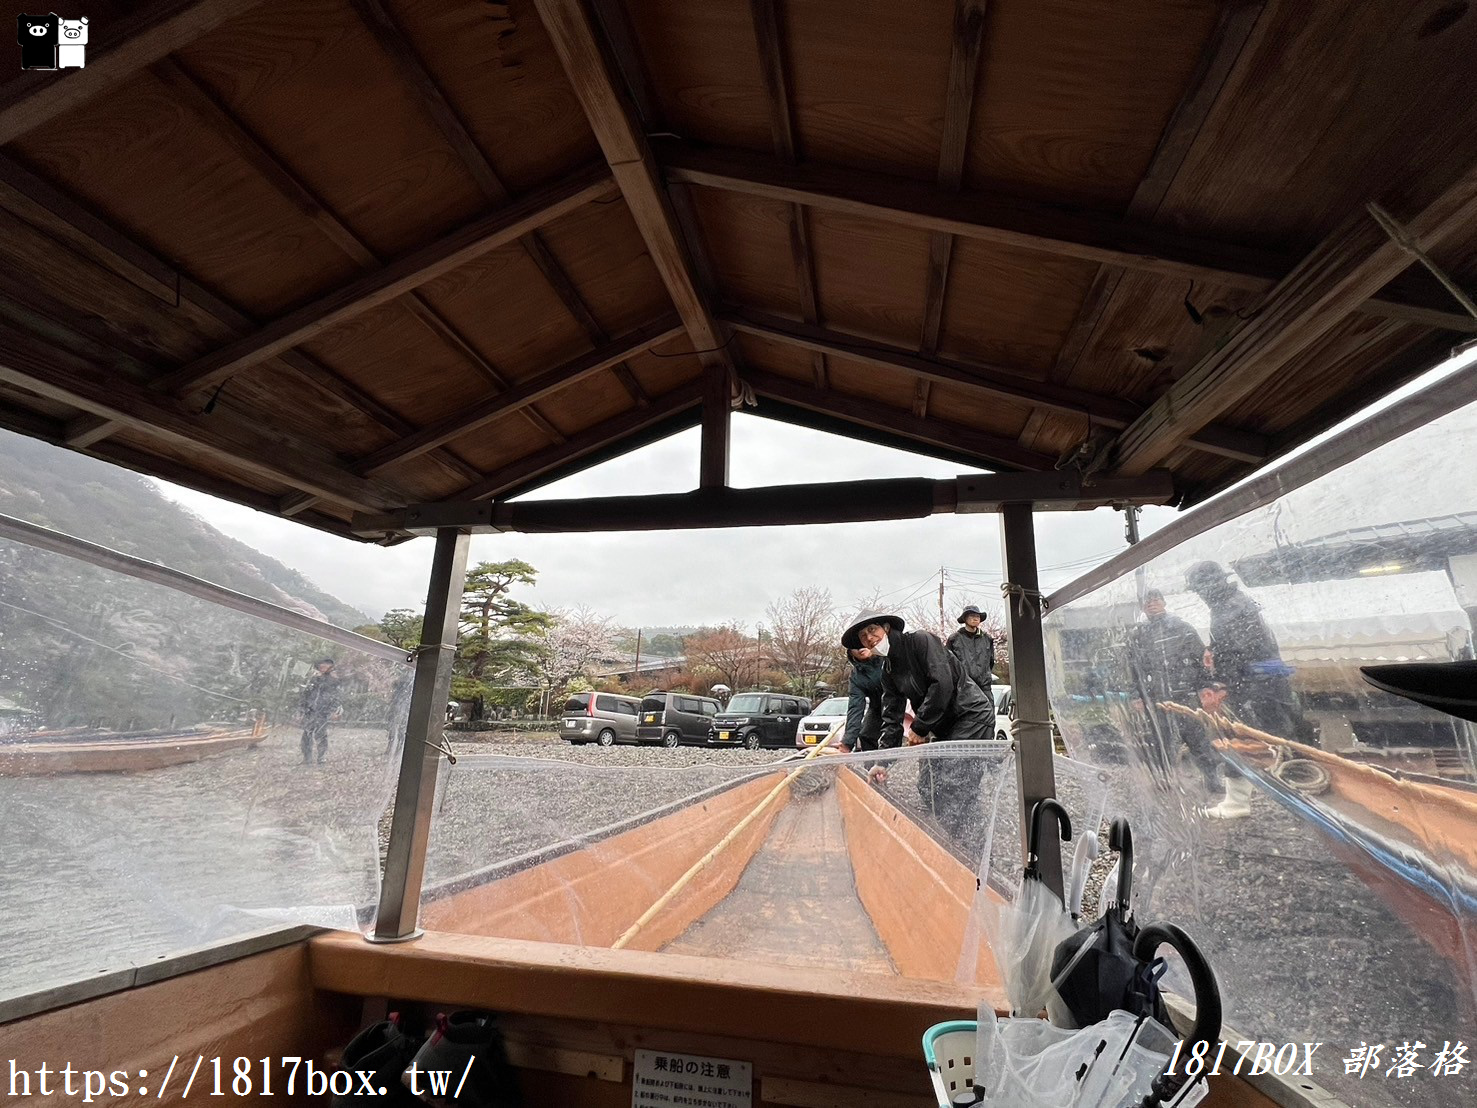 【京都景點】嵐山・保津川遊船。保津川峽谷景觀詩情畫意。穿越山間峽谷神秘如鏡